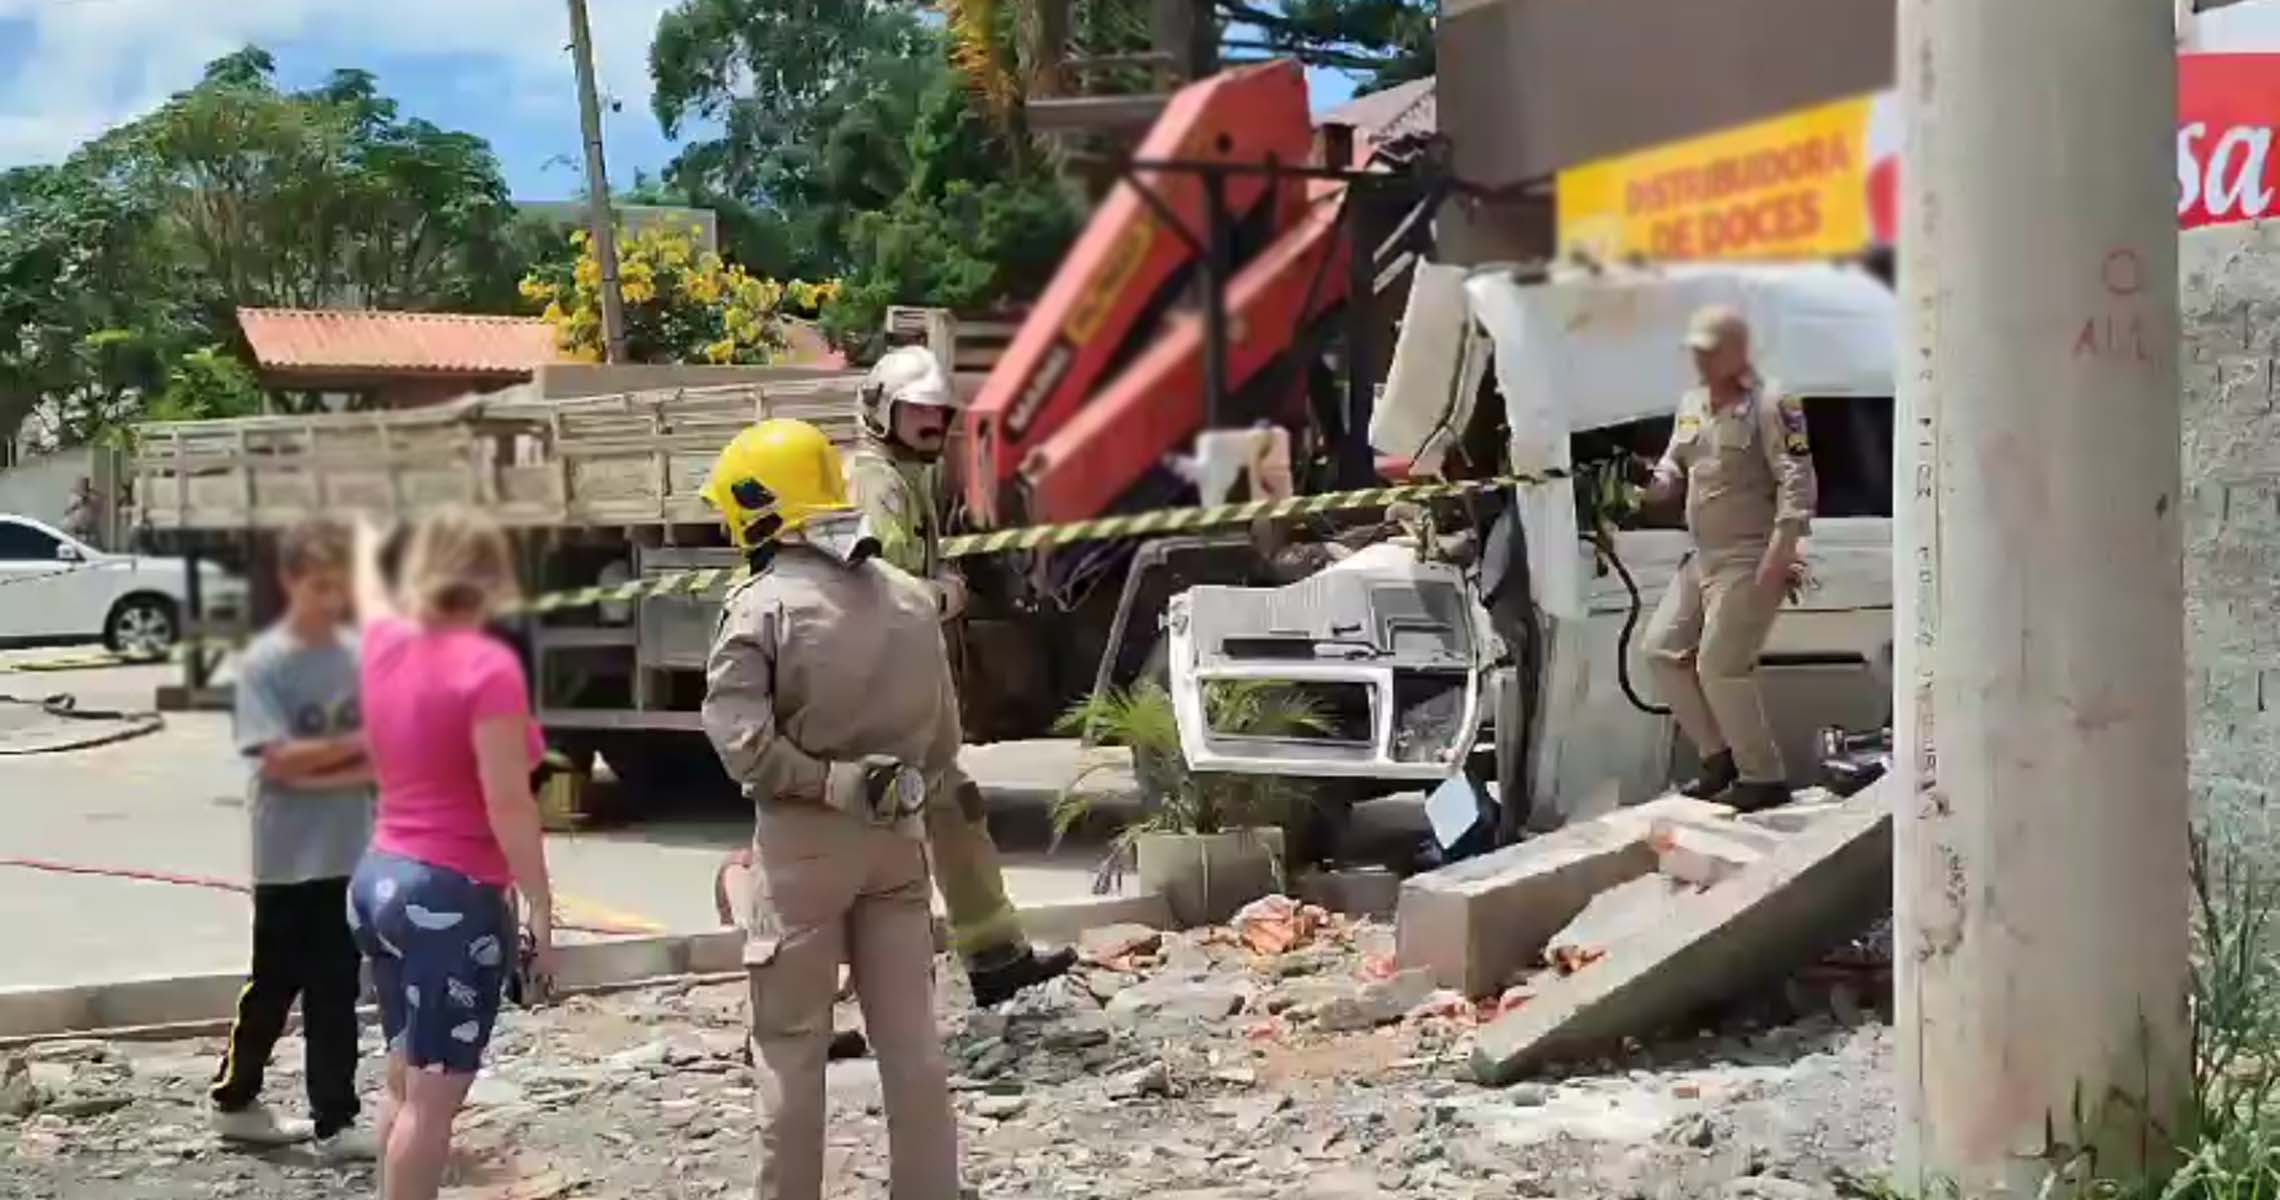 Tragédia! Cabine se solta de caminhão, bate forte contra muro e mata motorista em avenida na RMC